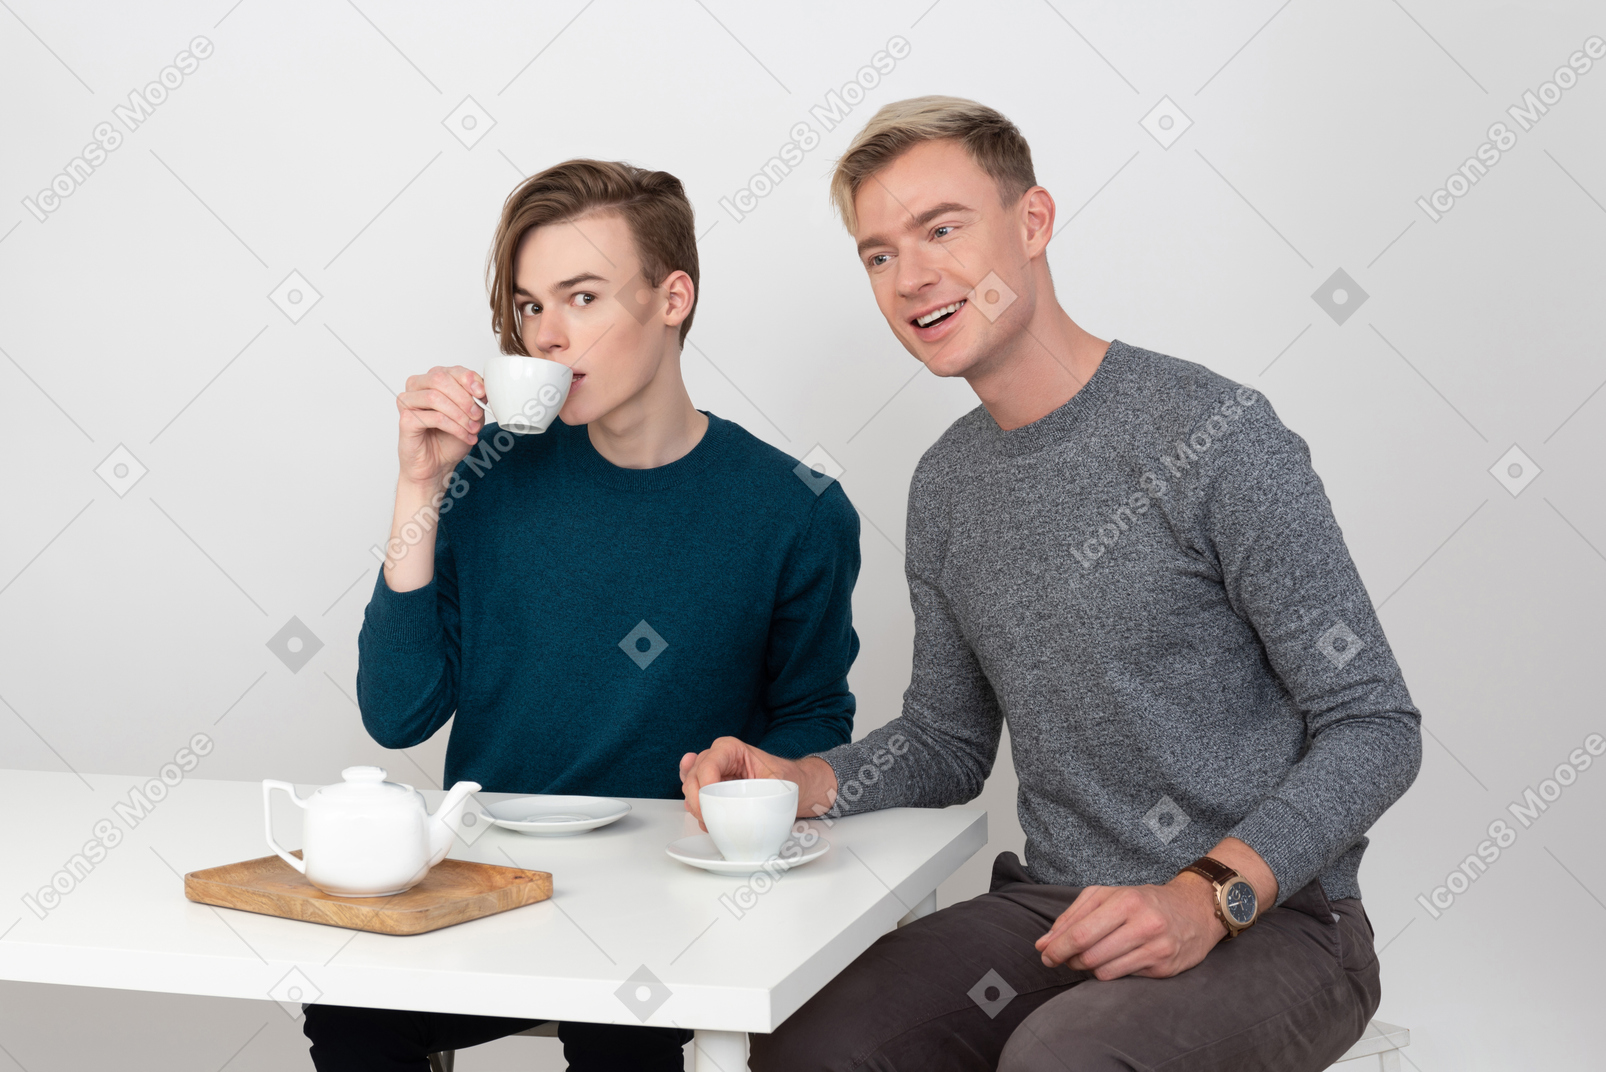 Dois homens jovens e bonitos em um encontro romântico